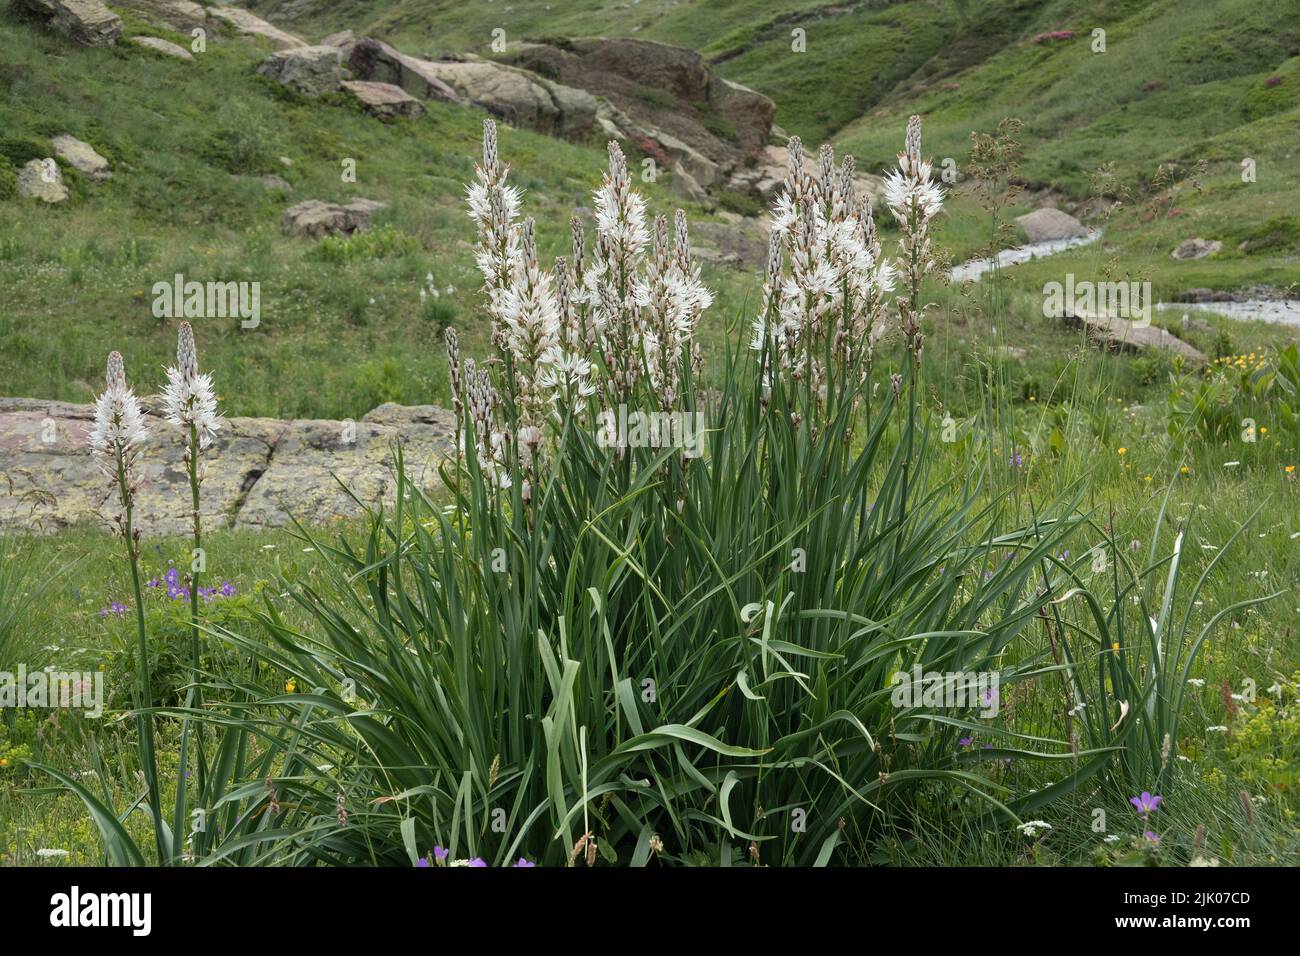 Ásphodels blancos, plantas con tallos largos y flores blancas, en paisaje alpino Foto de stock